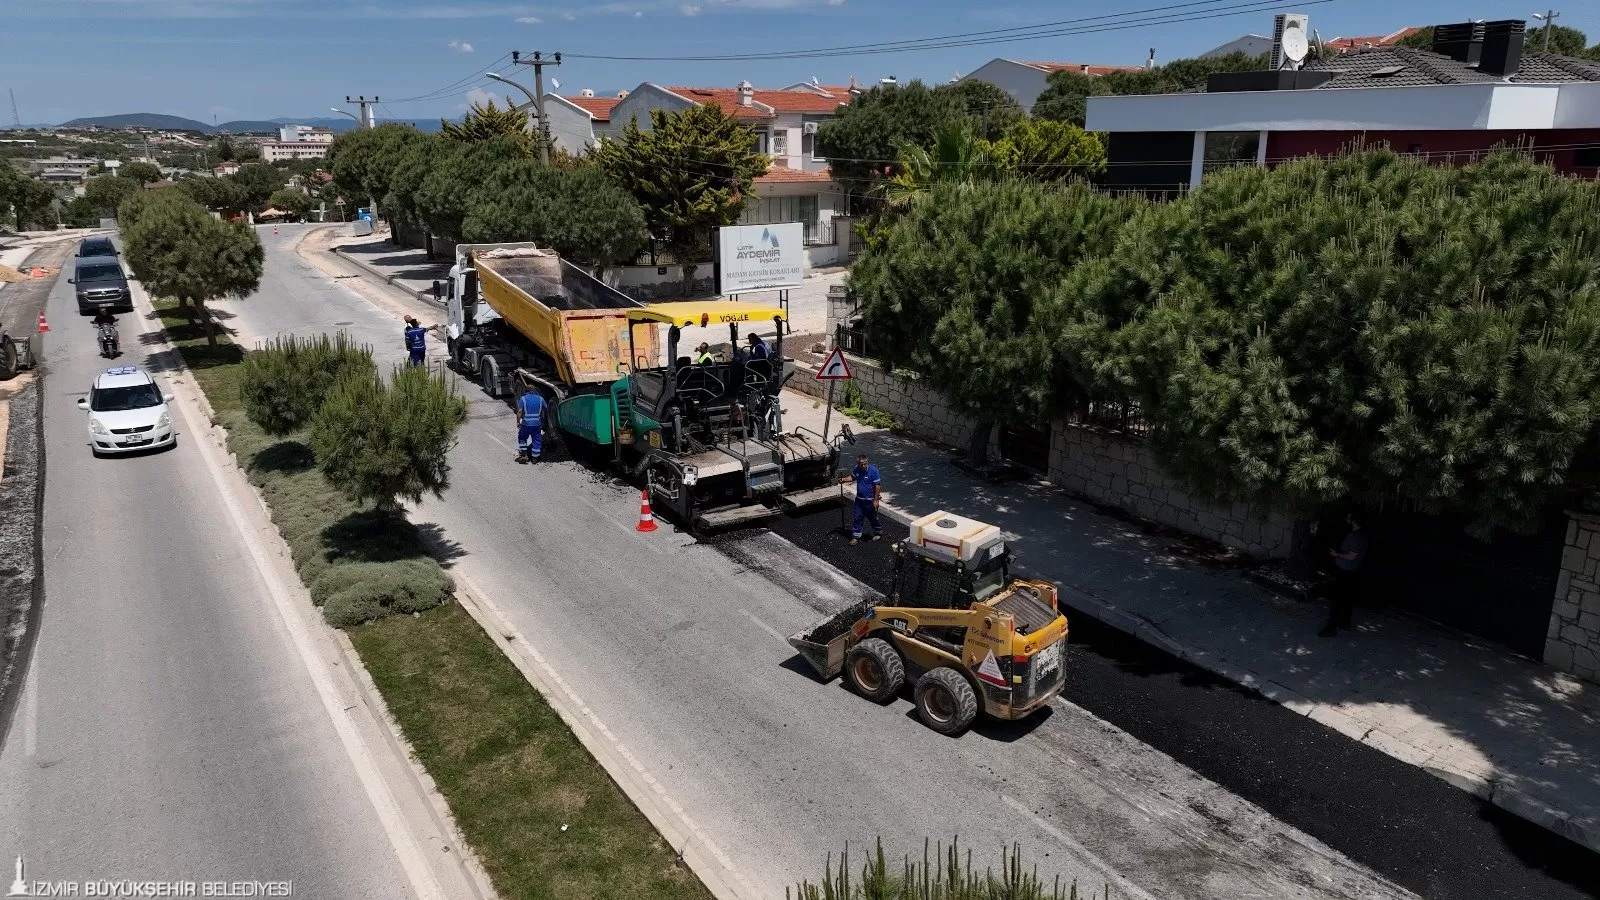 İzmir Büyükşehir Belediyesi, İzmir'in turizm açısından önemli ilçeleri olan Çeşme, Karaburun ve Torbalı'da büyük ölçekli yol yenileme çalışmaları başlattı.